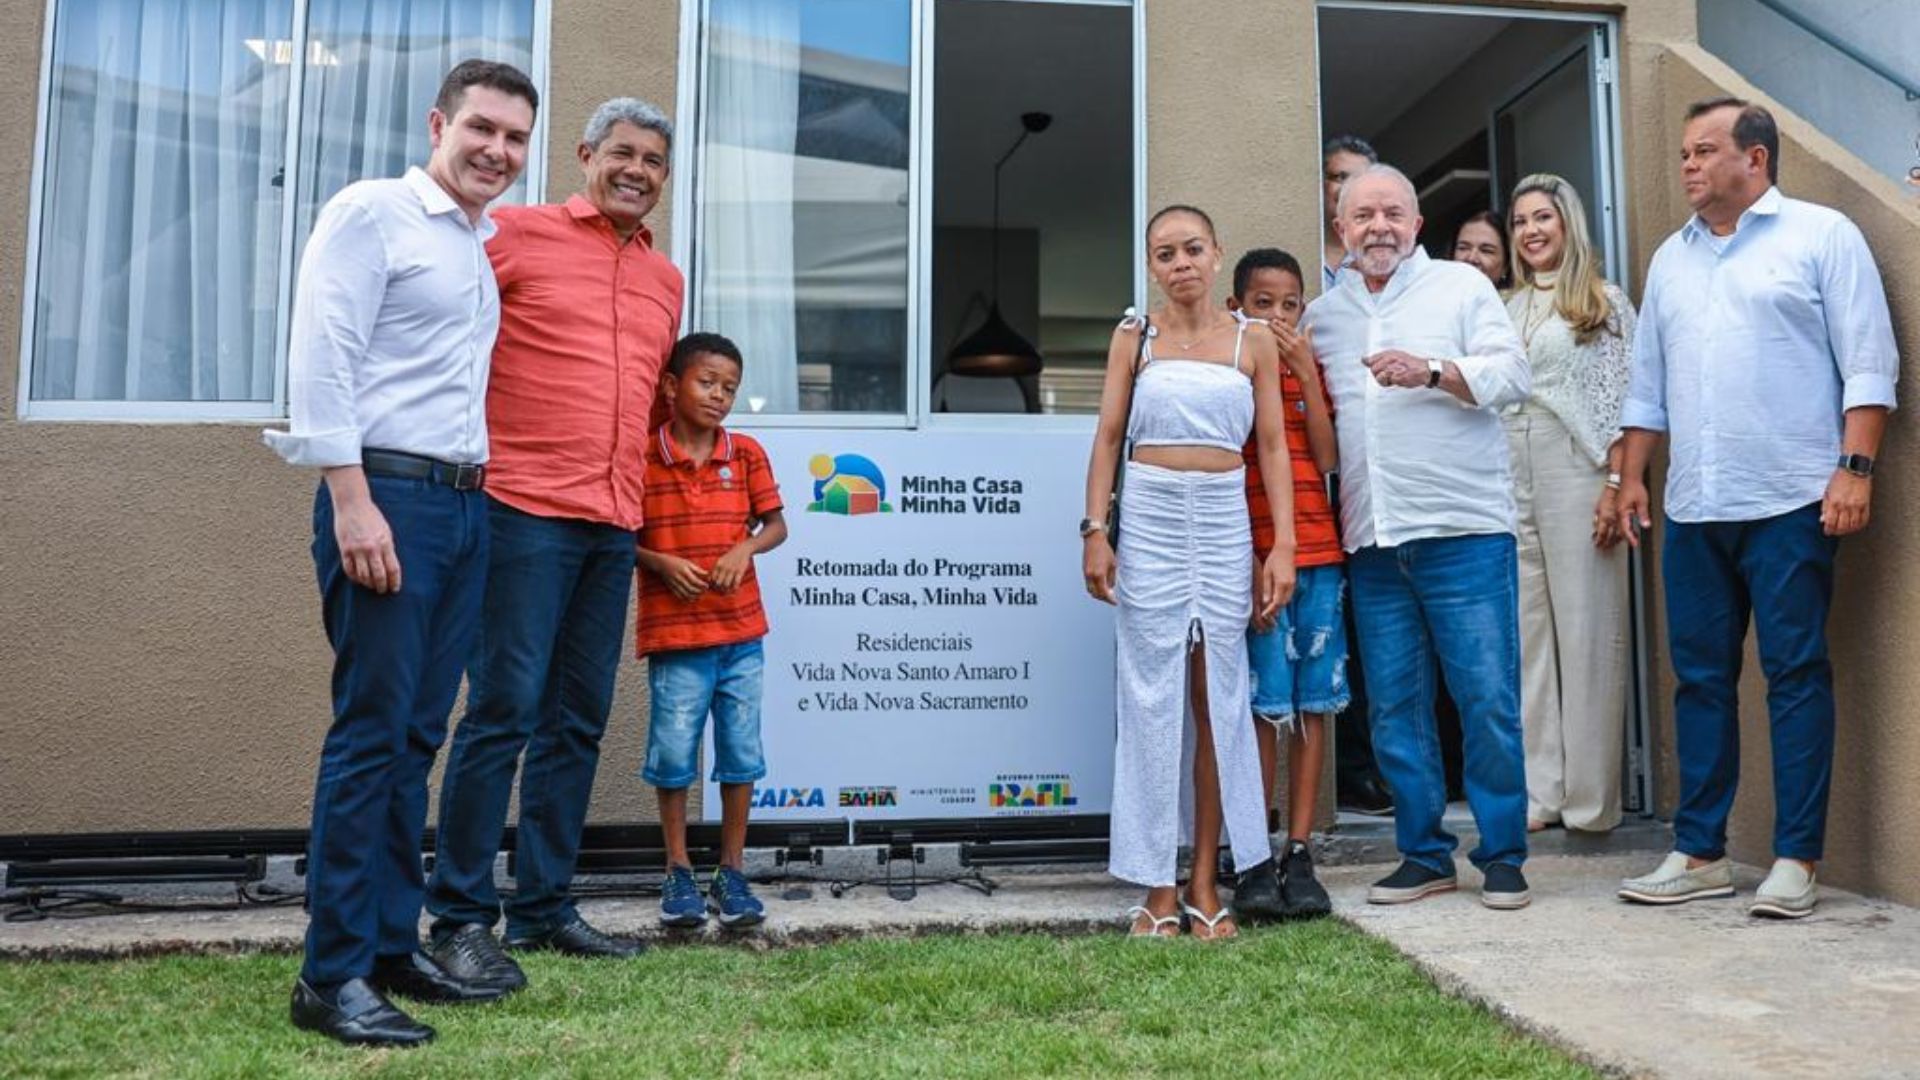 Lula oficializou o retorno do programa em agenda em Santo Amaro - Foto: Reprodução/Twitter @Planalto @ricardostuckert